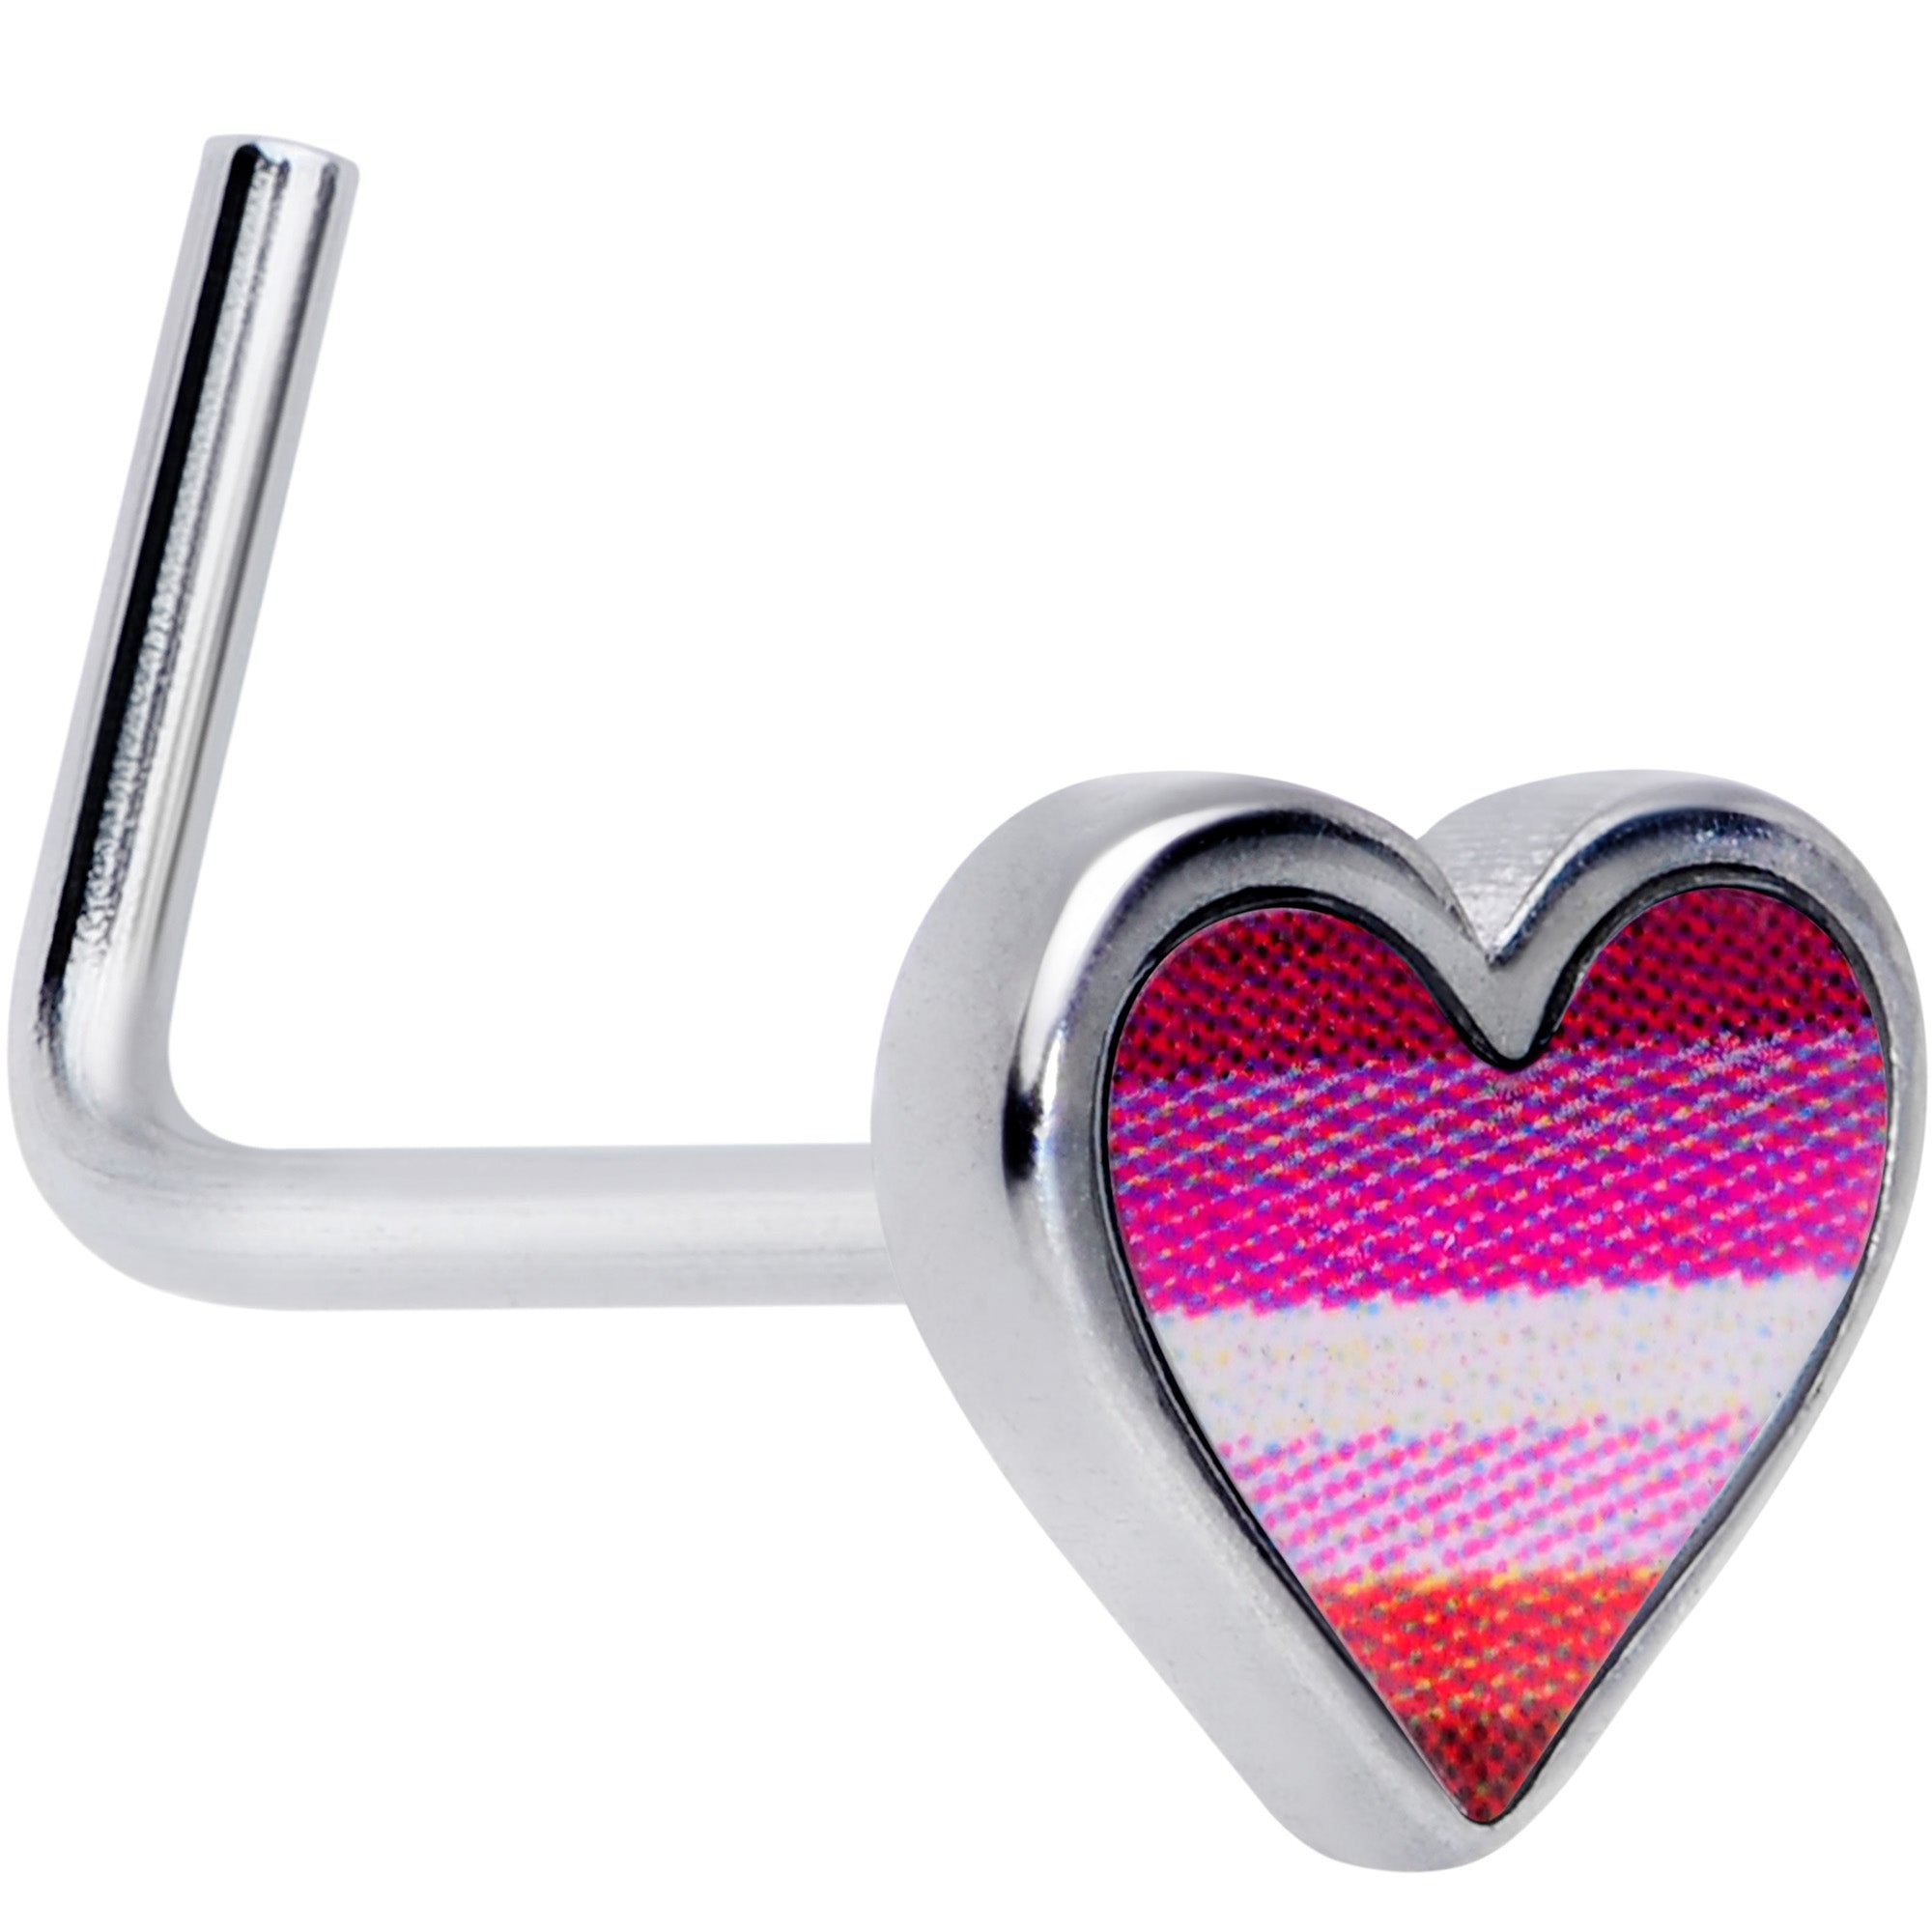 20 Gauge 5/16 Lesbian Pride Heart L Shaped Nose Ring